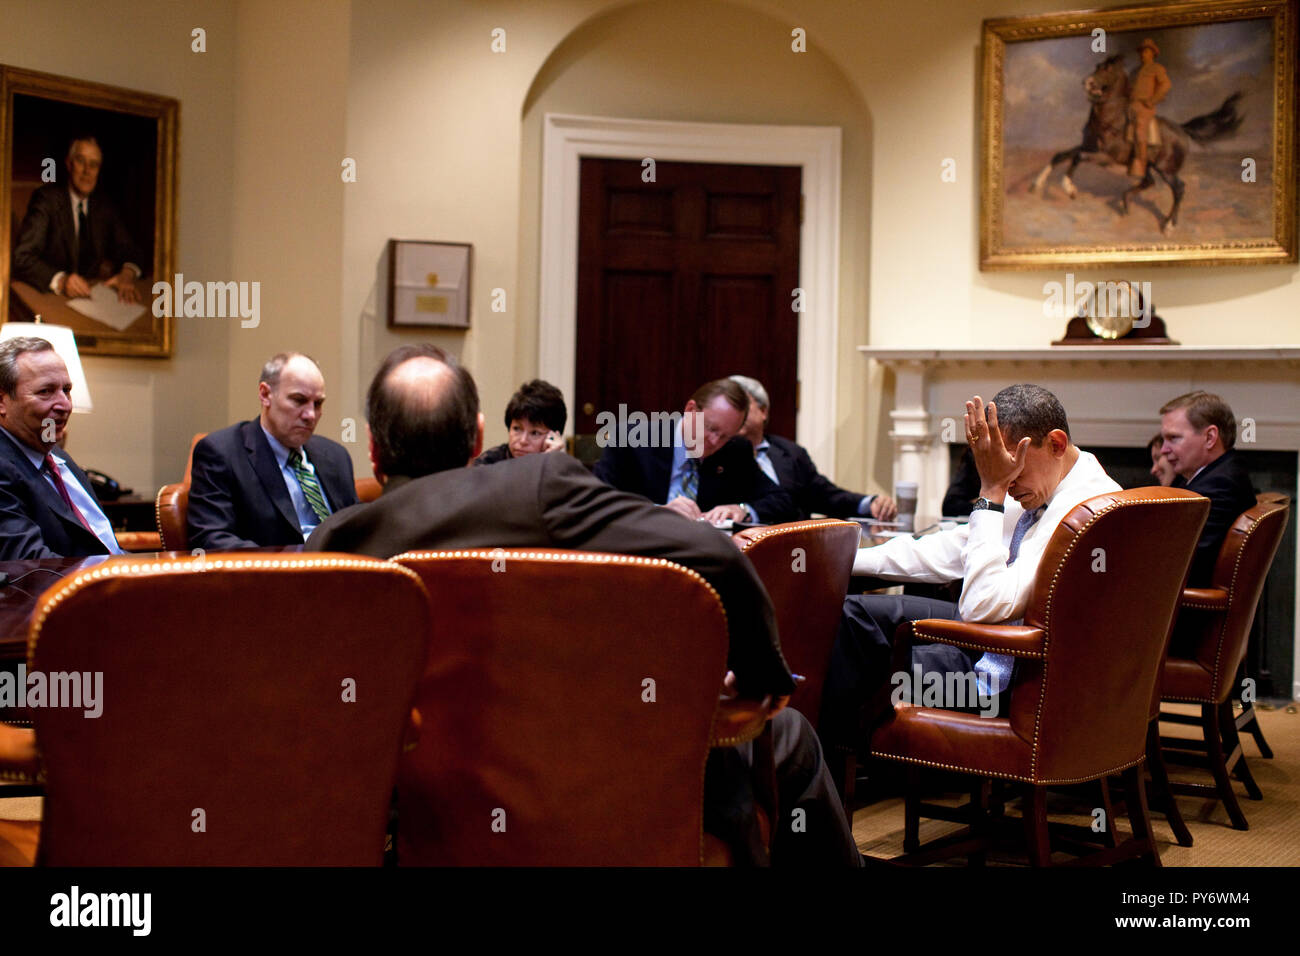 Le président Barack Obama rencontre les conseillers senior dans la Roosevelt Room. 2/16/09. Photo Officiel de la Maison Blanche par Pete Souza Banque D'Images